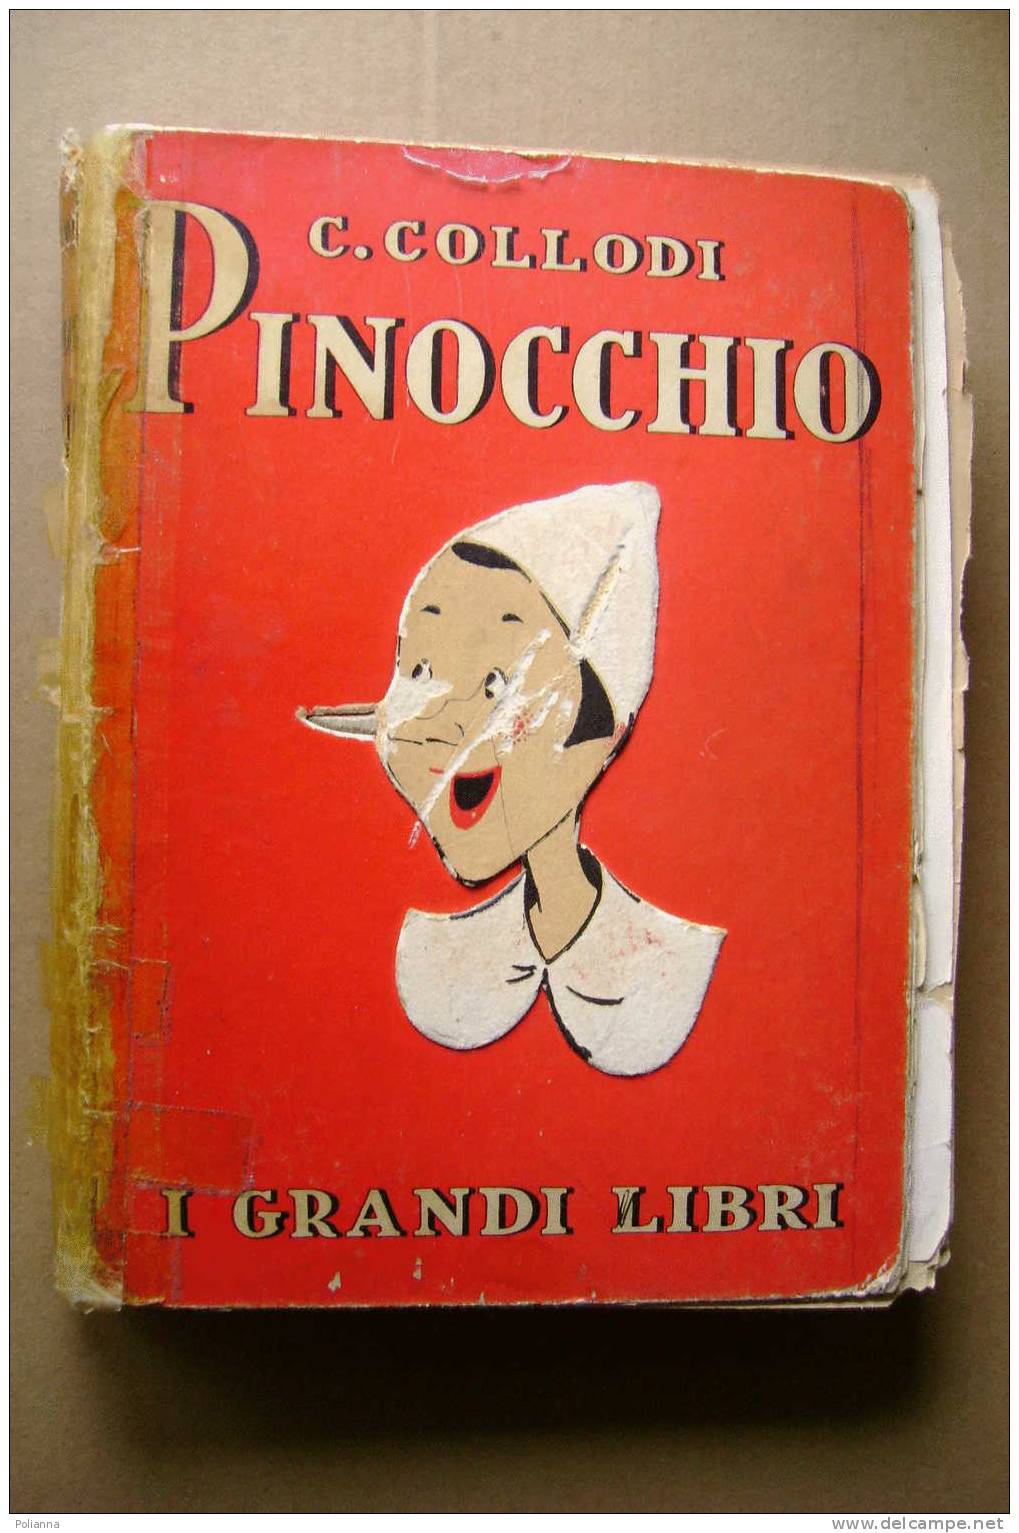 PCE/13 Collodi PINOCCHIO I Grandi Libri Salani 1951 Ill.Faorzi - Old